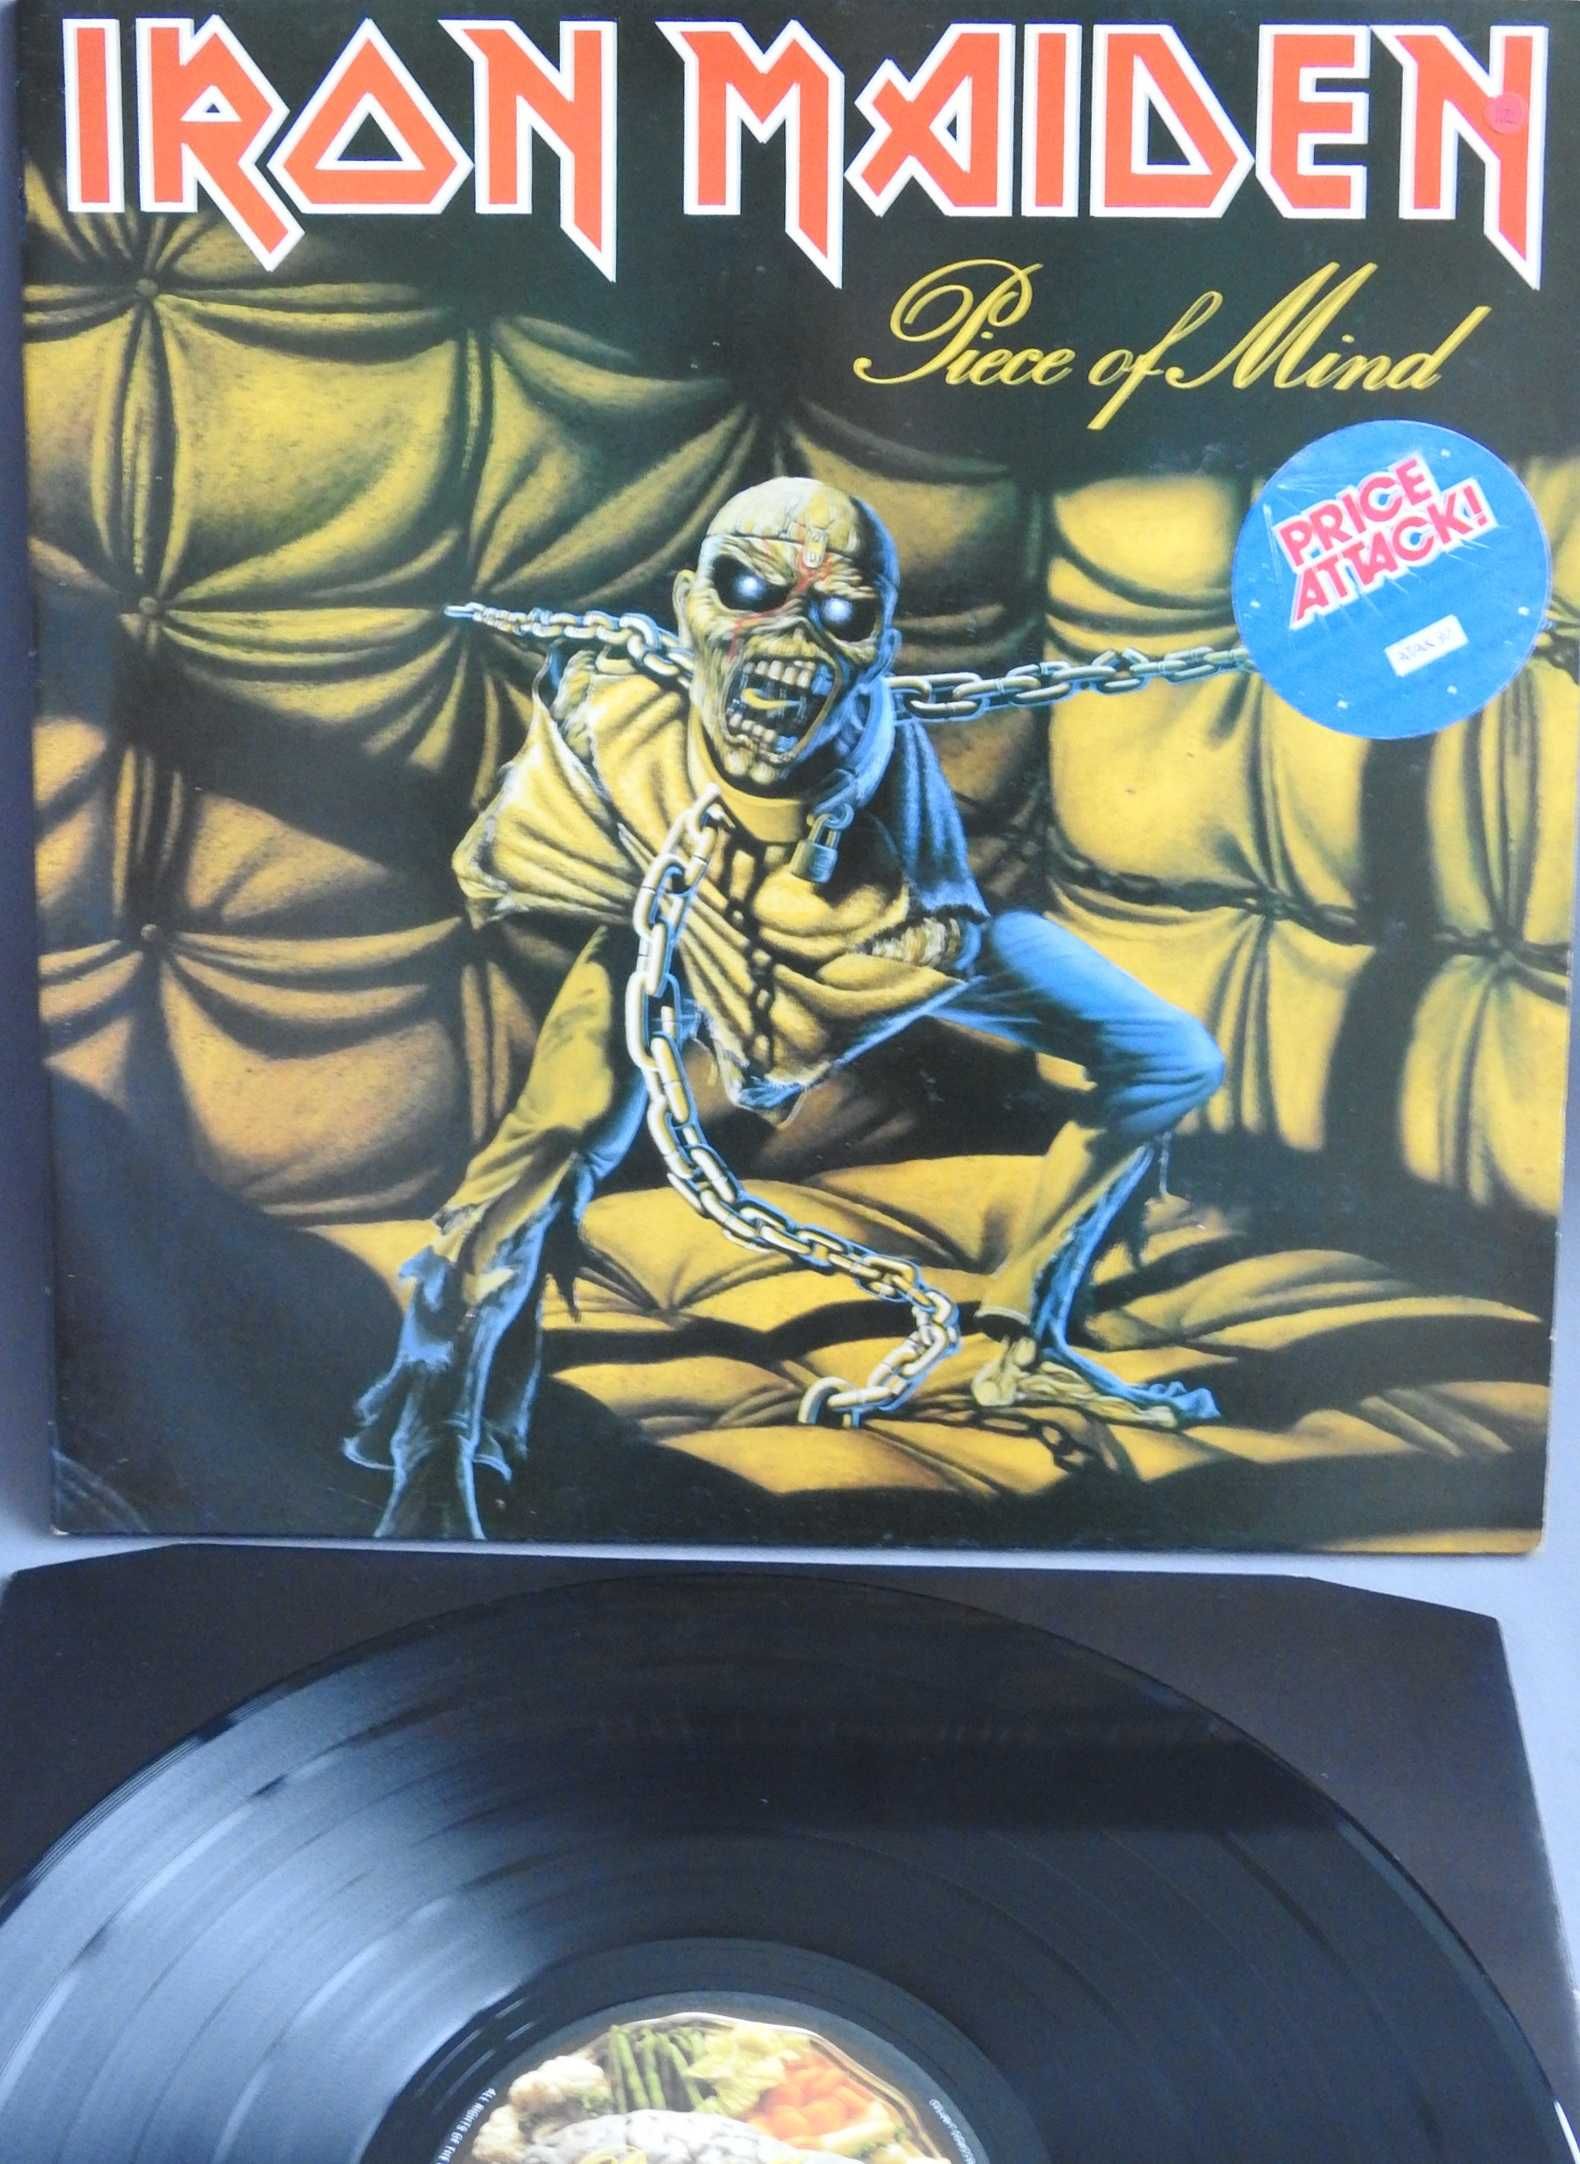 Iron Maiden Piece Of Mind LP 1983 UK пластинка EX Британия 1 press